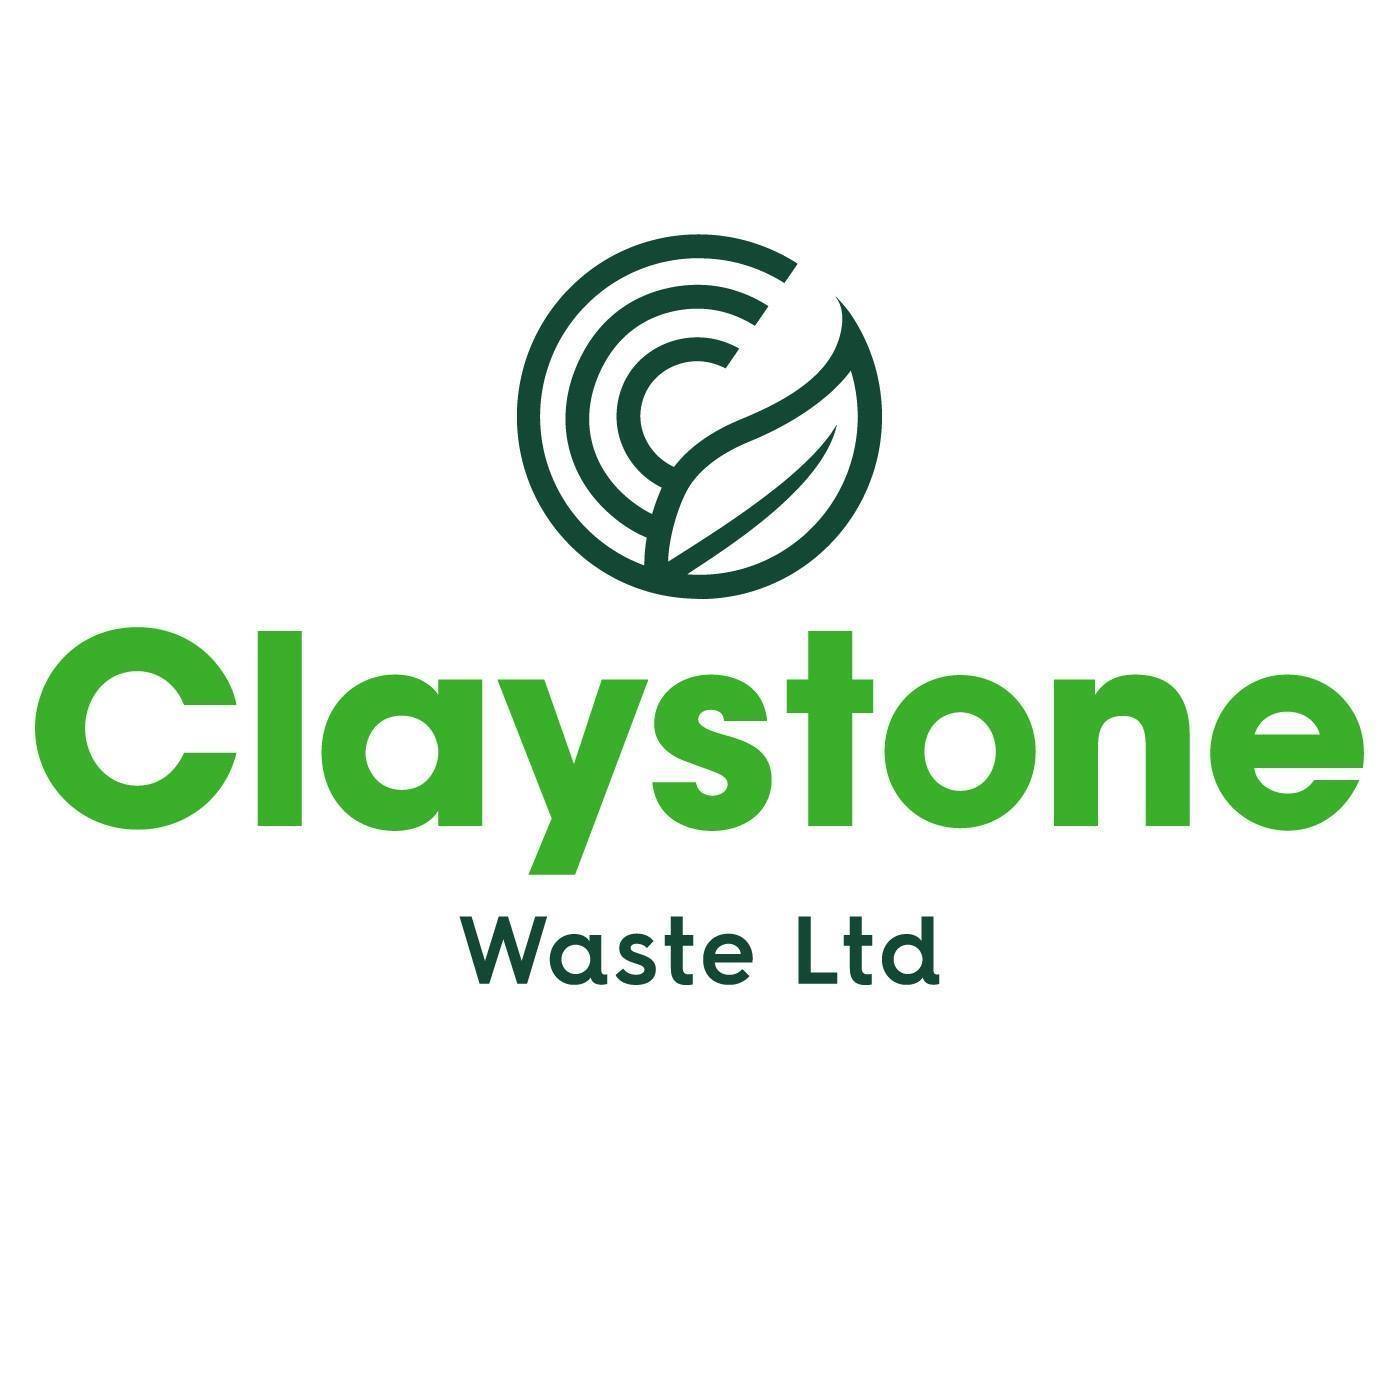 Claystone Waste Ltd.